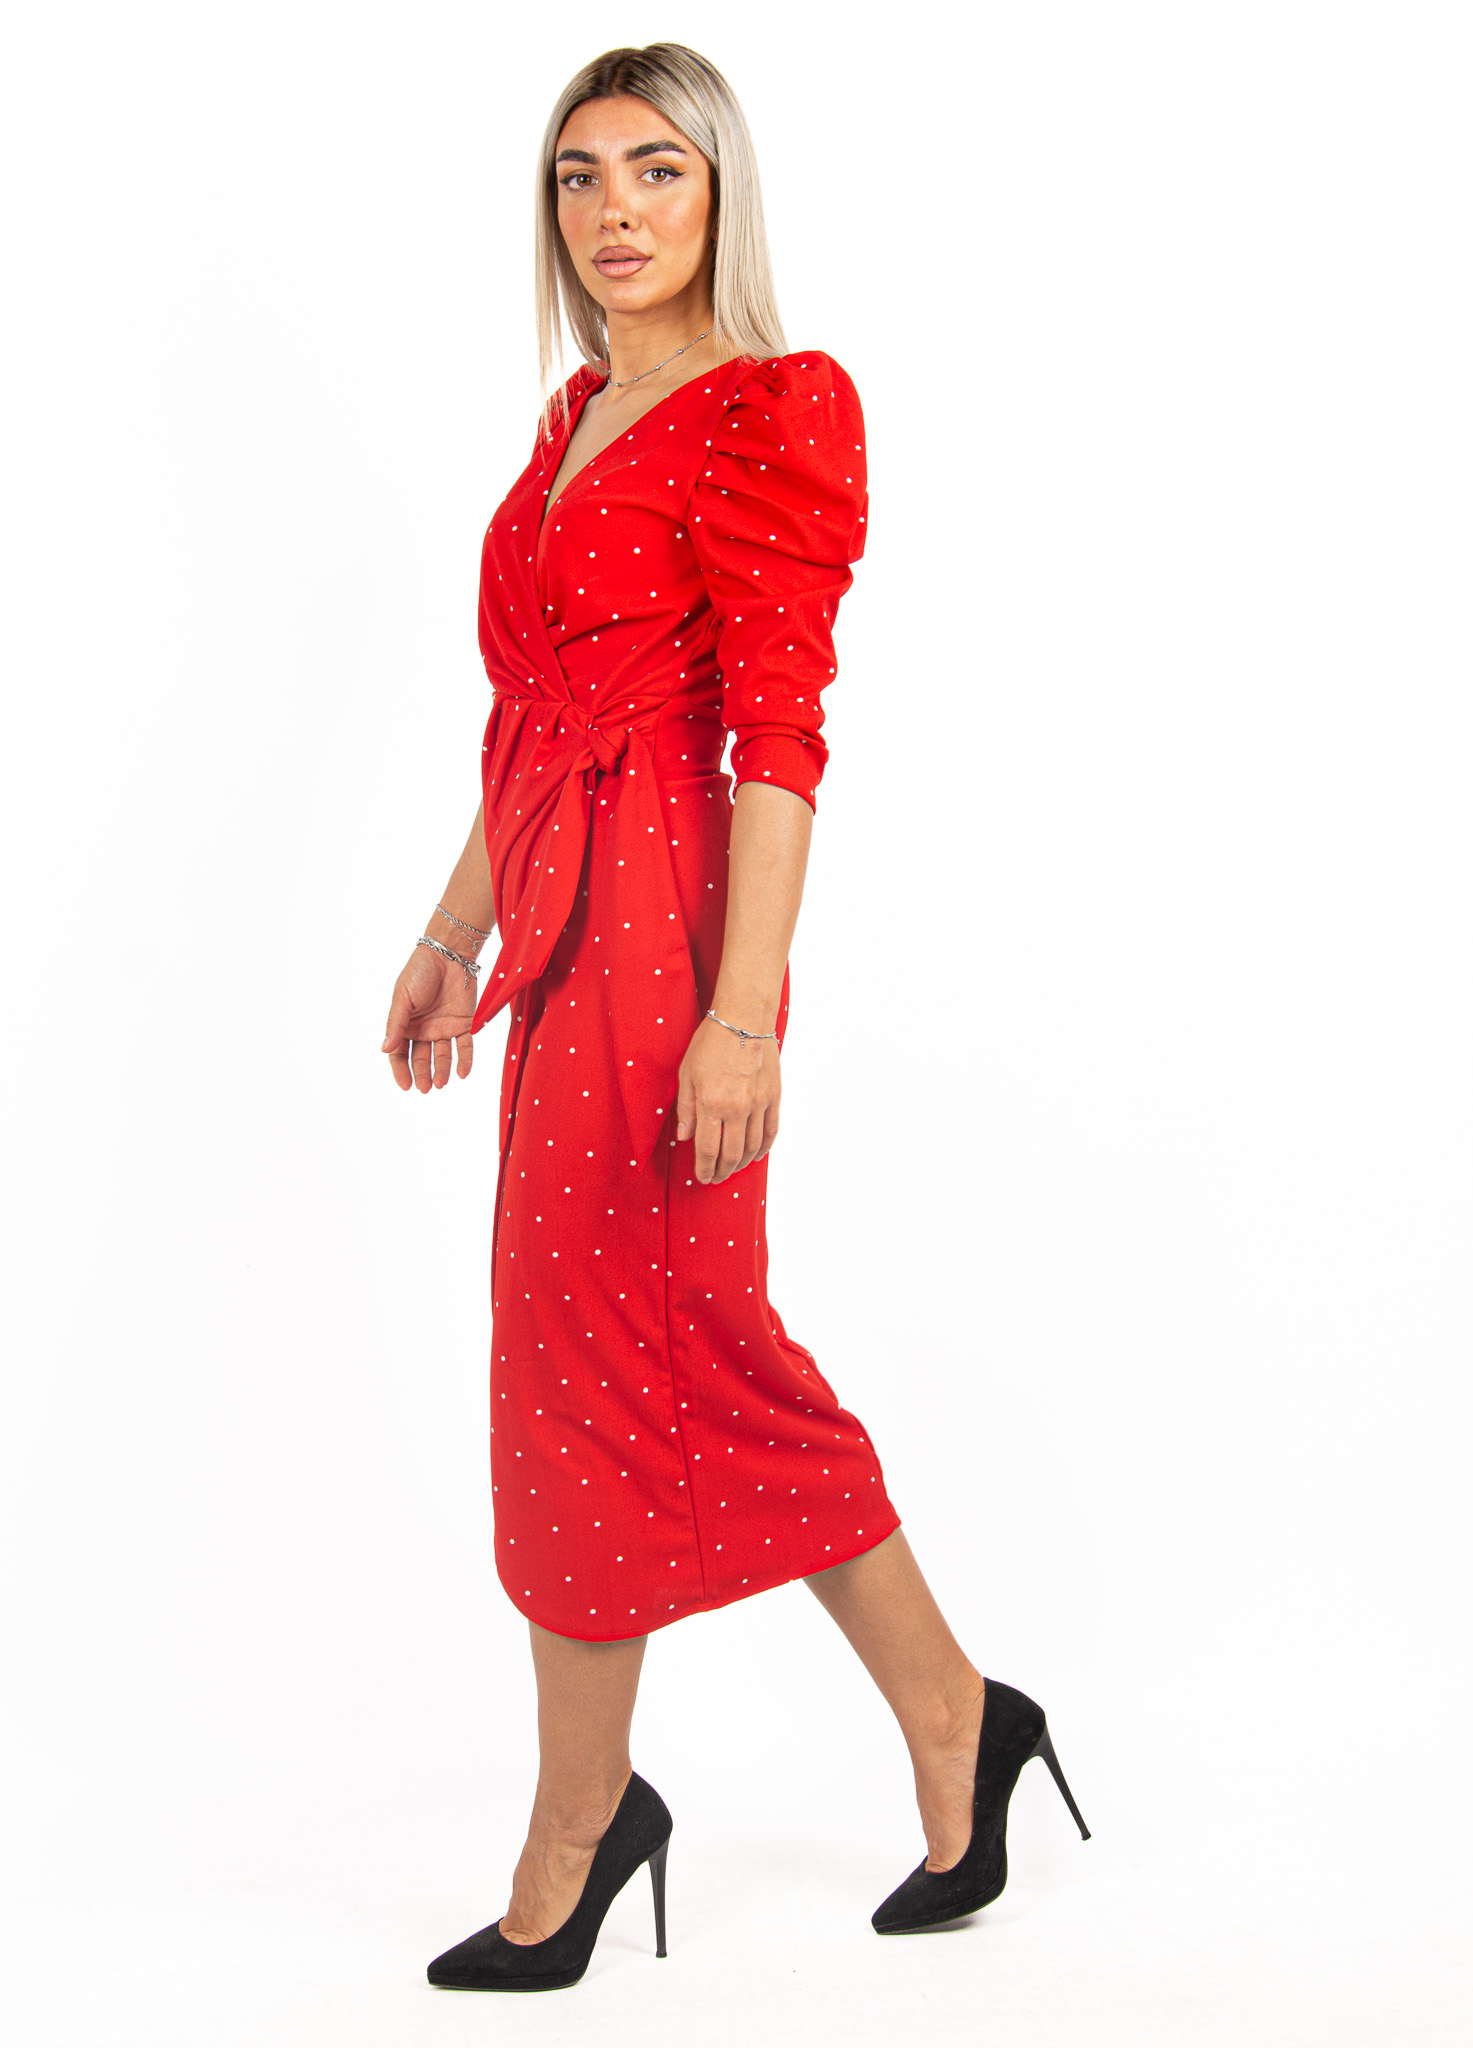 Φόρεμα Pin-Up Πουά Κόκκινο | EllenBoutique